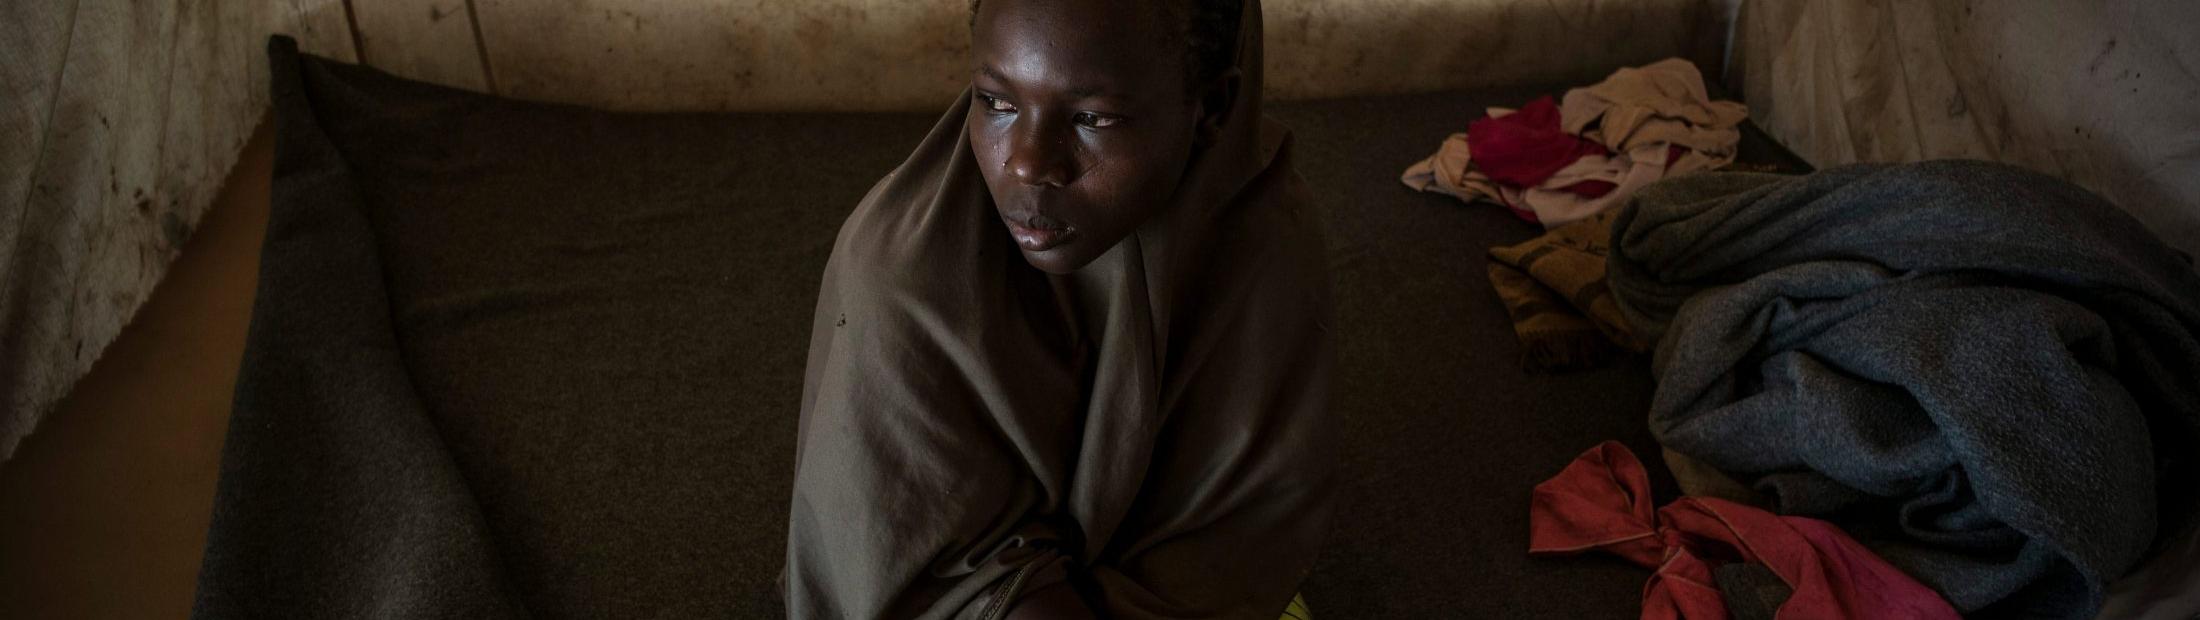 Mutilación genital femenina: mujeres y niñas en peligro